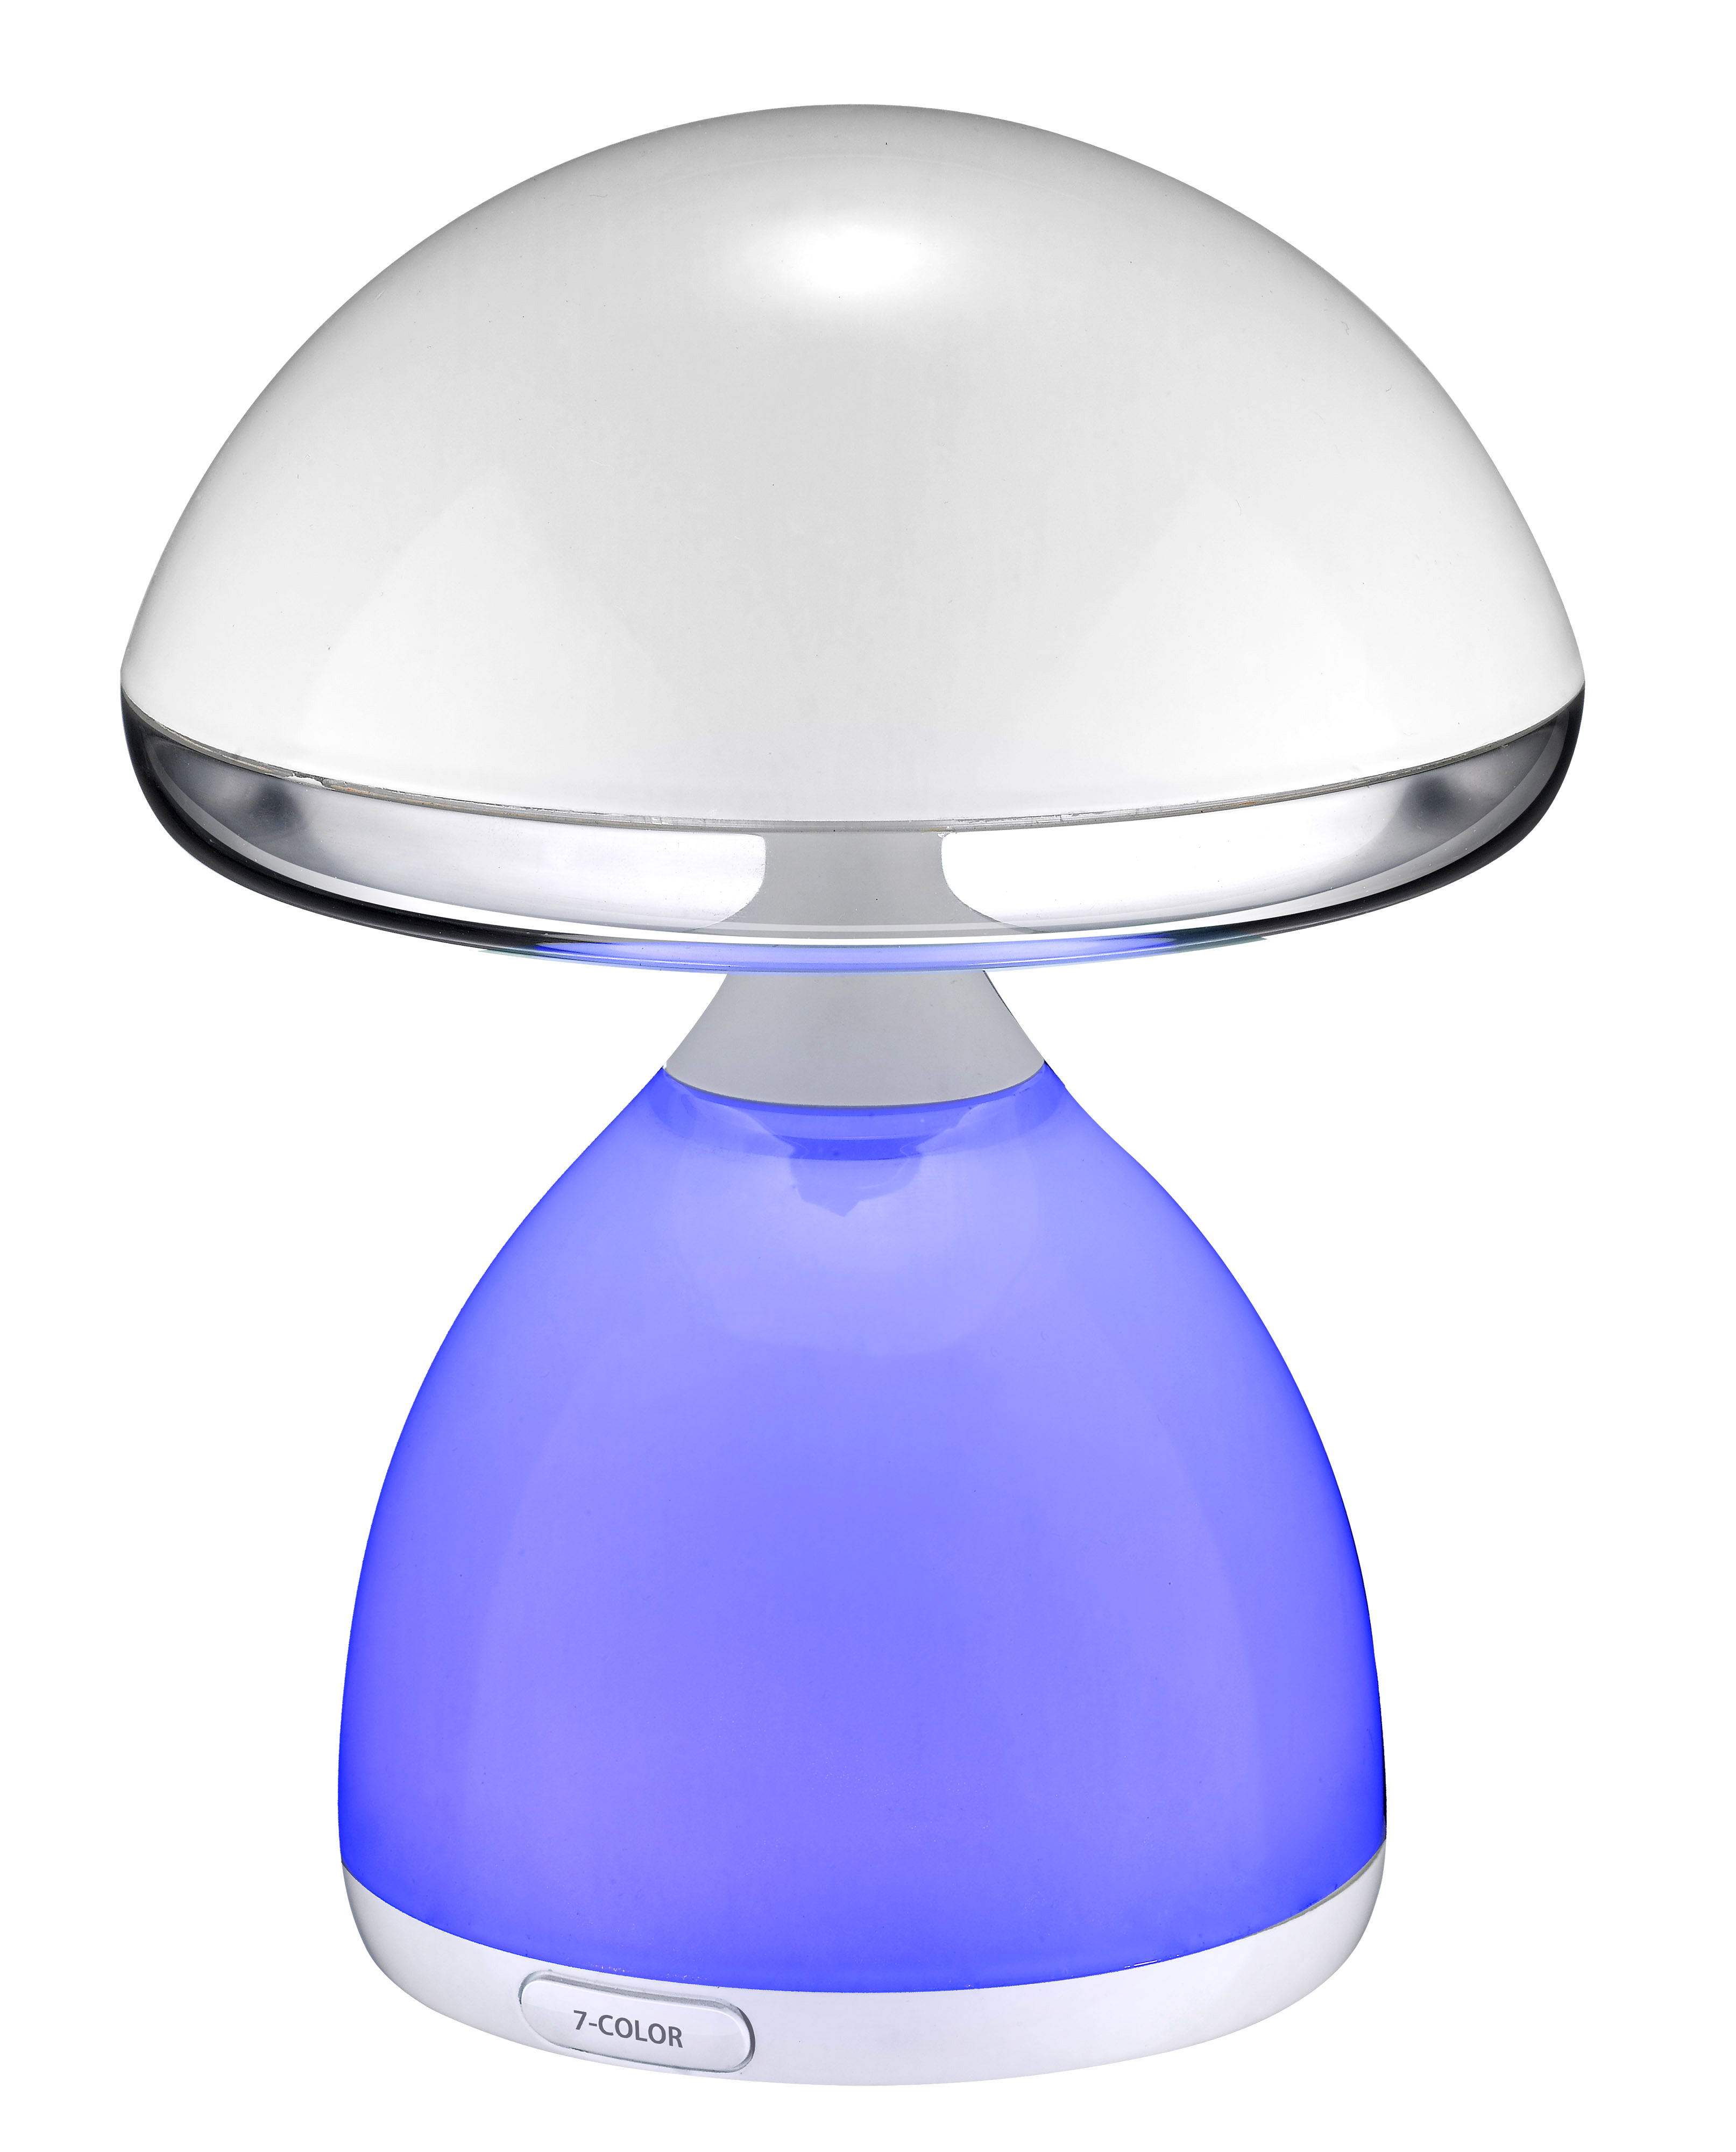 炫彩礼品蘑菇灯手机控制调光调色震动感应拍击控制开关学习护眼小台灯图片